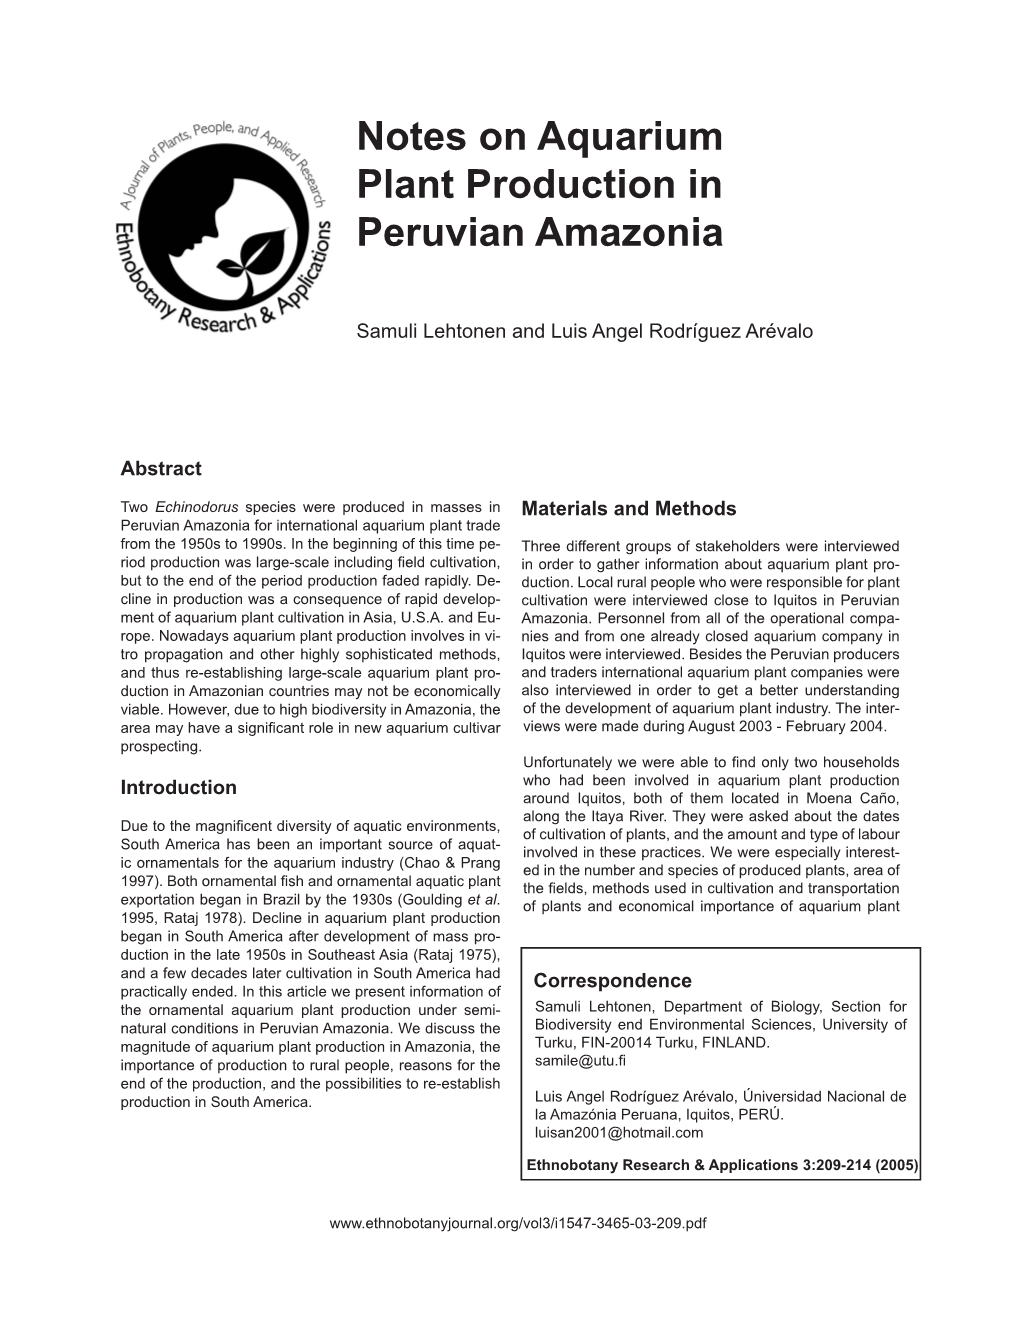 Notes on Aquarium Plant Production in Peruvian Amazonia